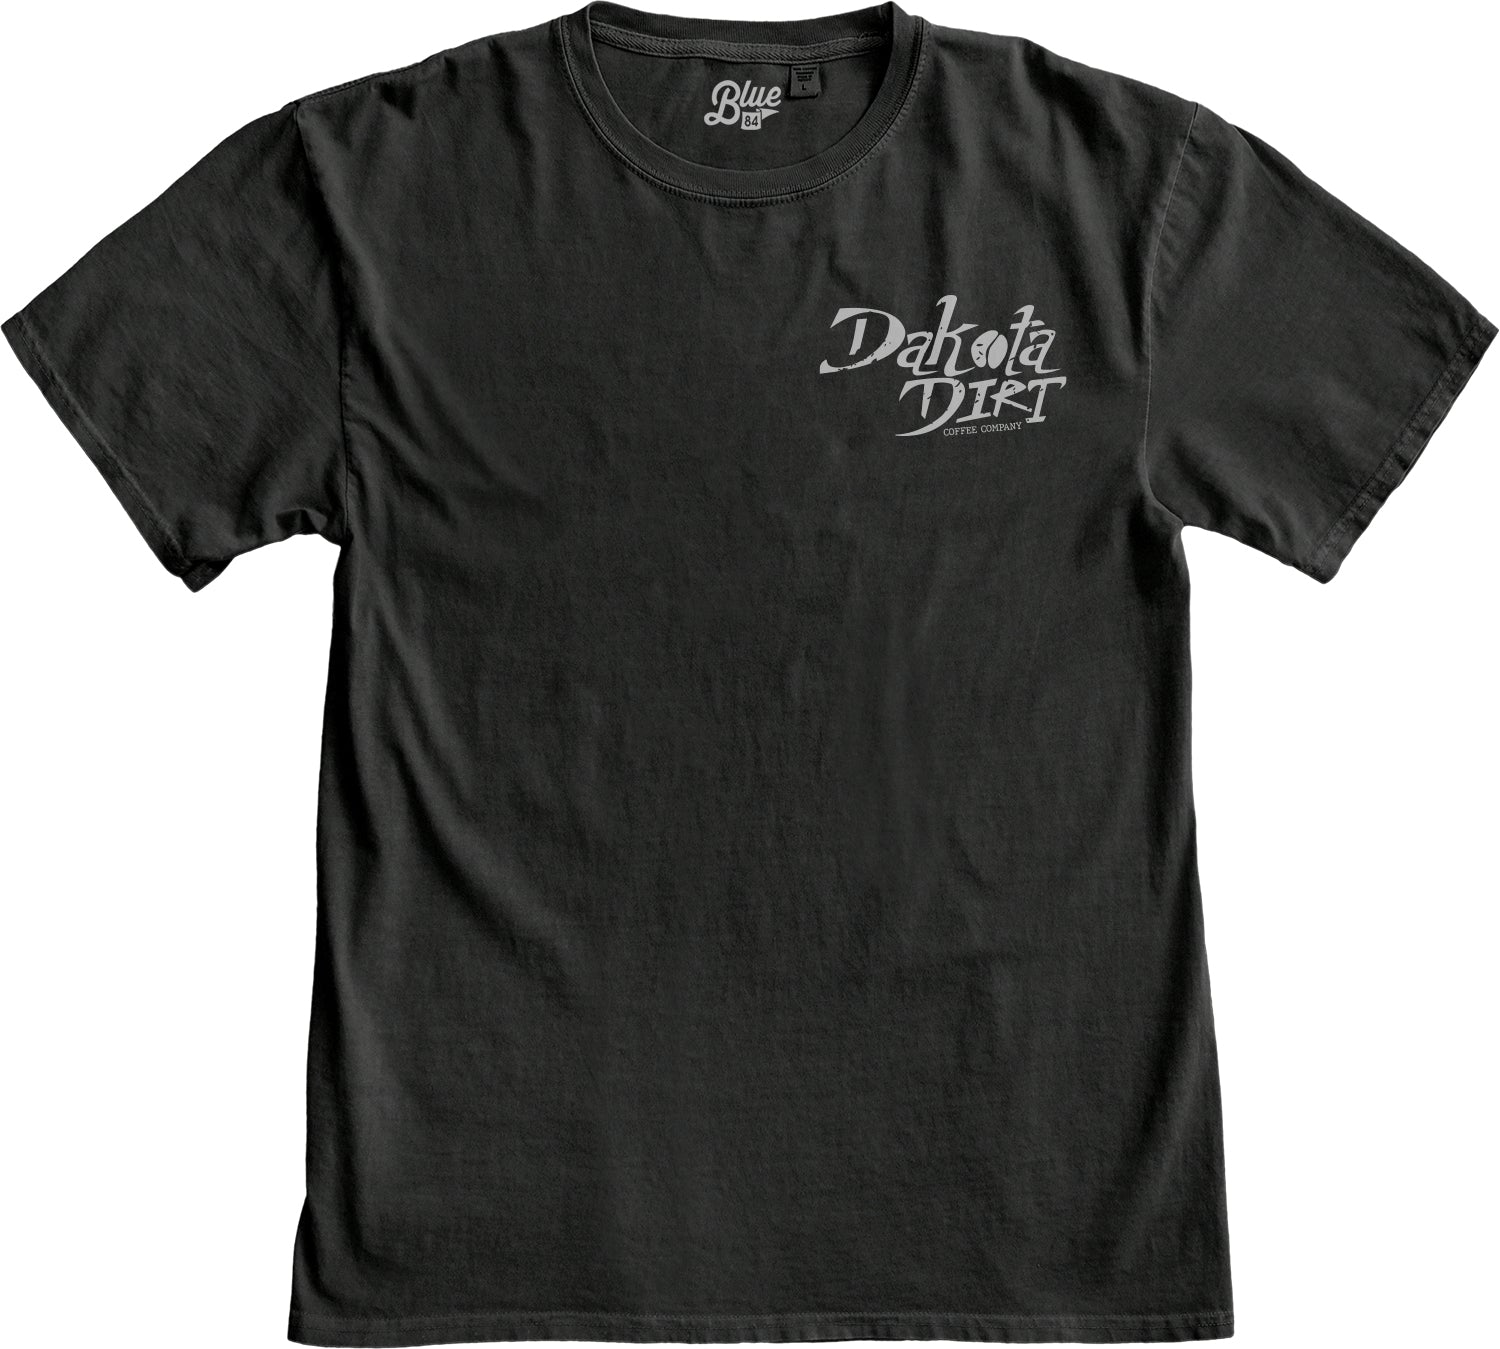 Dakota Dirt Text Logo / Blue84 T-Shirt